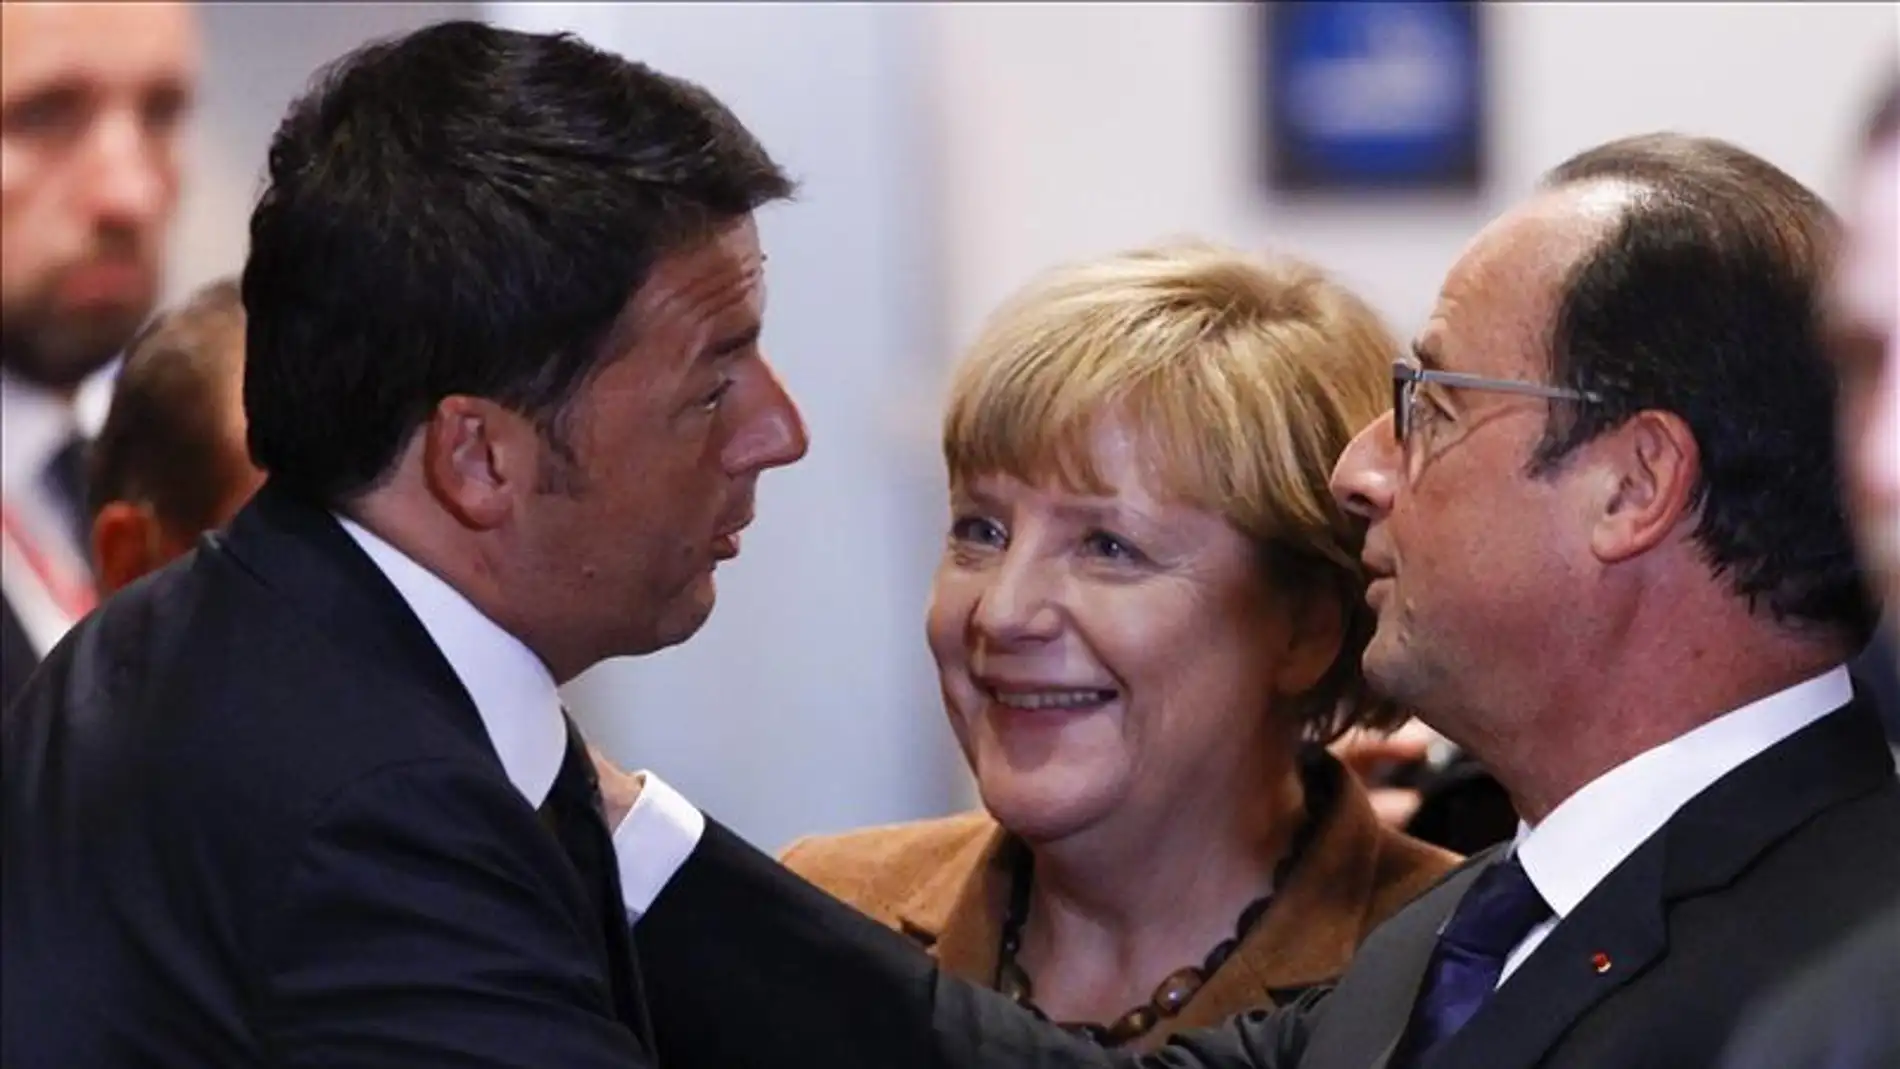 Hollande con Merkel y Renzi